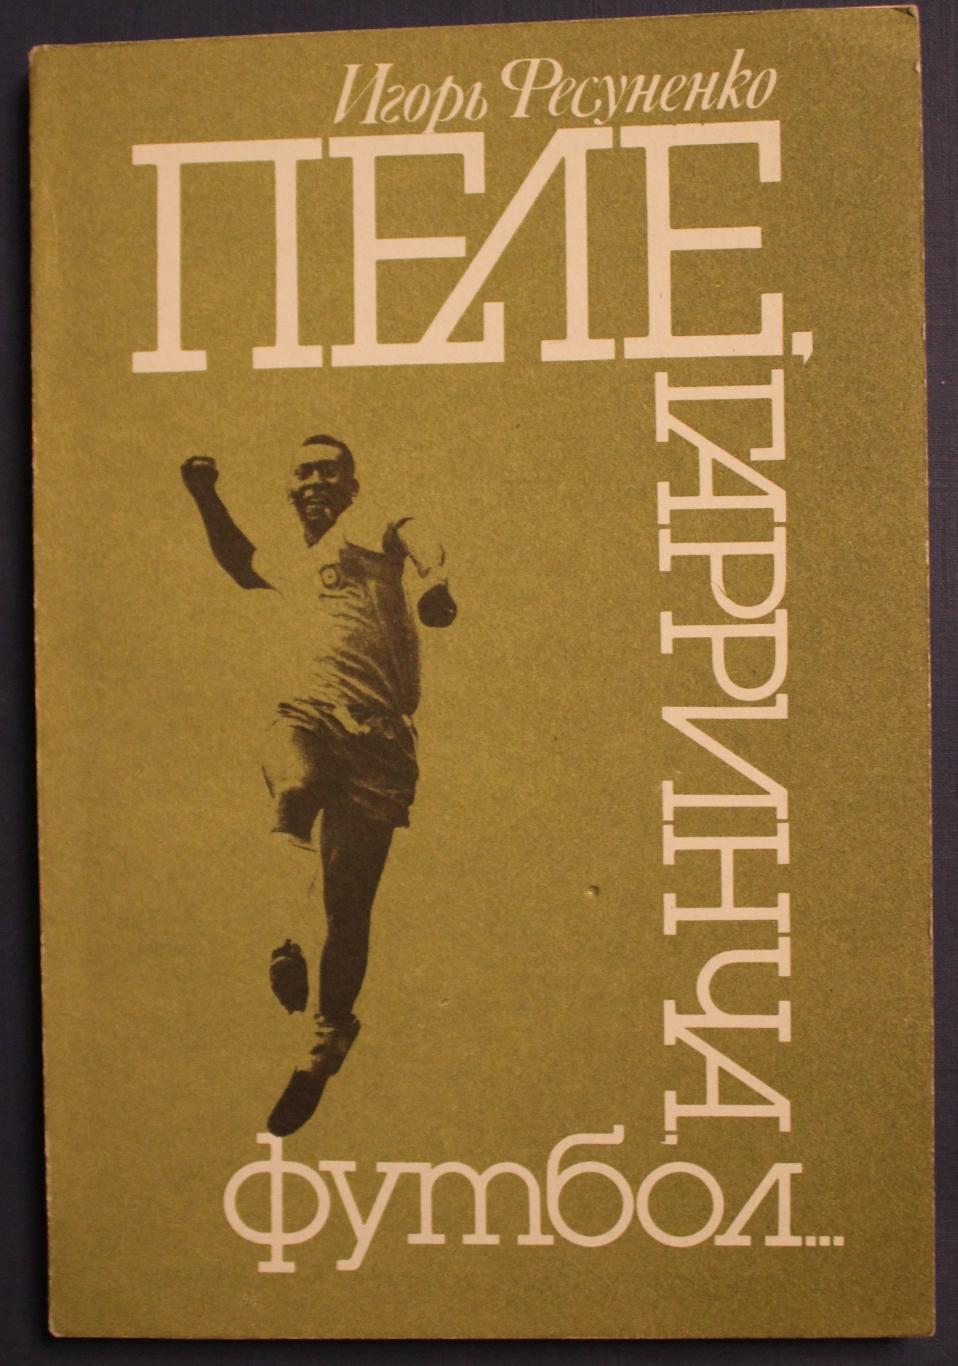 Игорь Фесуненко Пеле, Гарринча, футбол... издание 1990